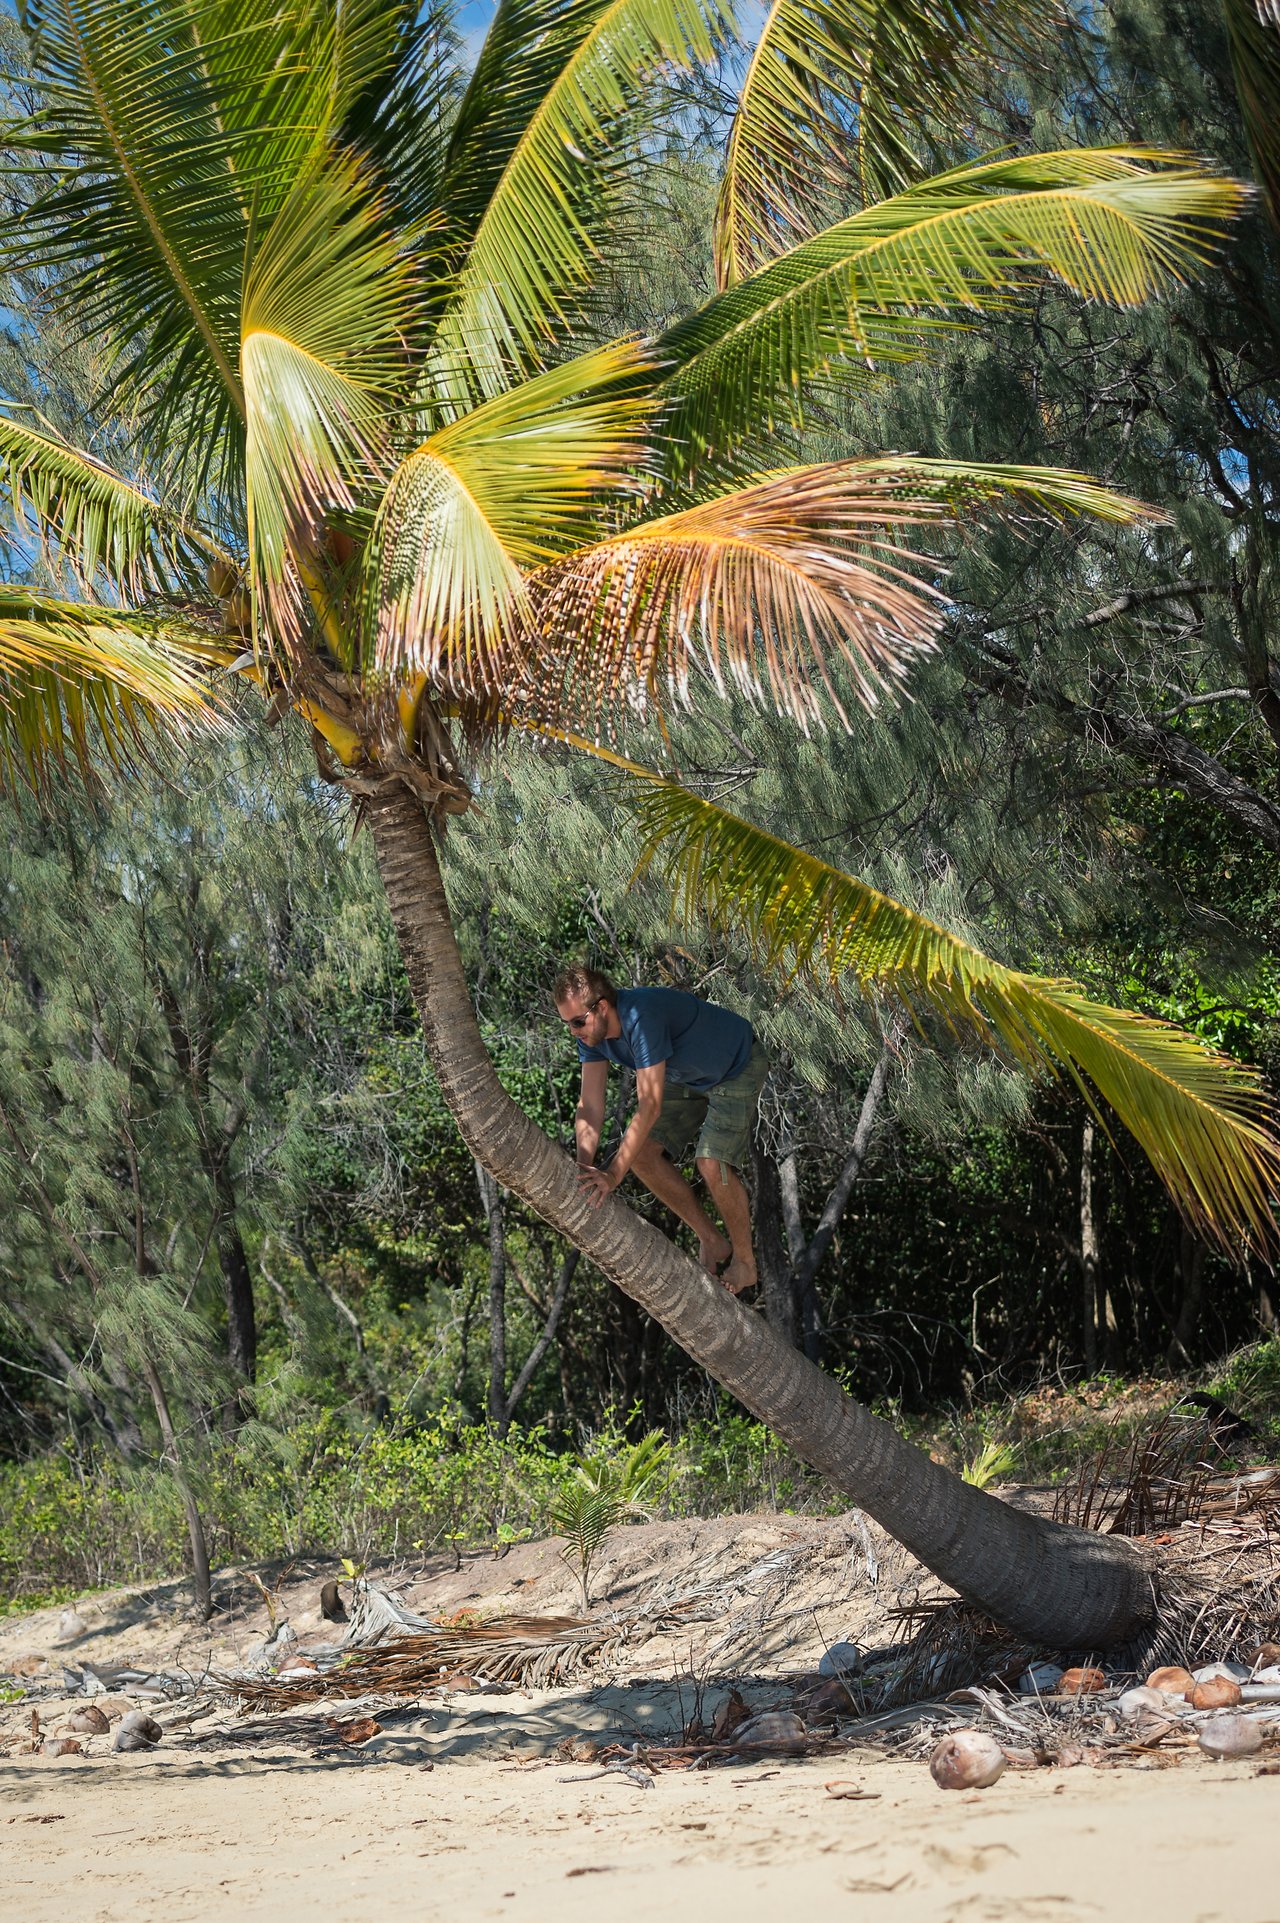 Climbing a palm tree